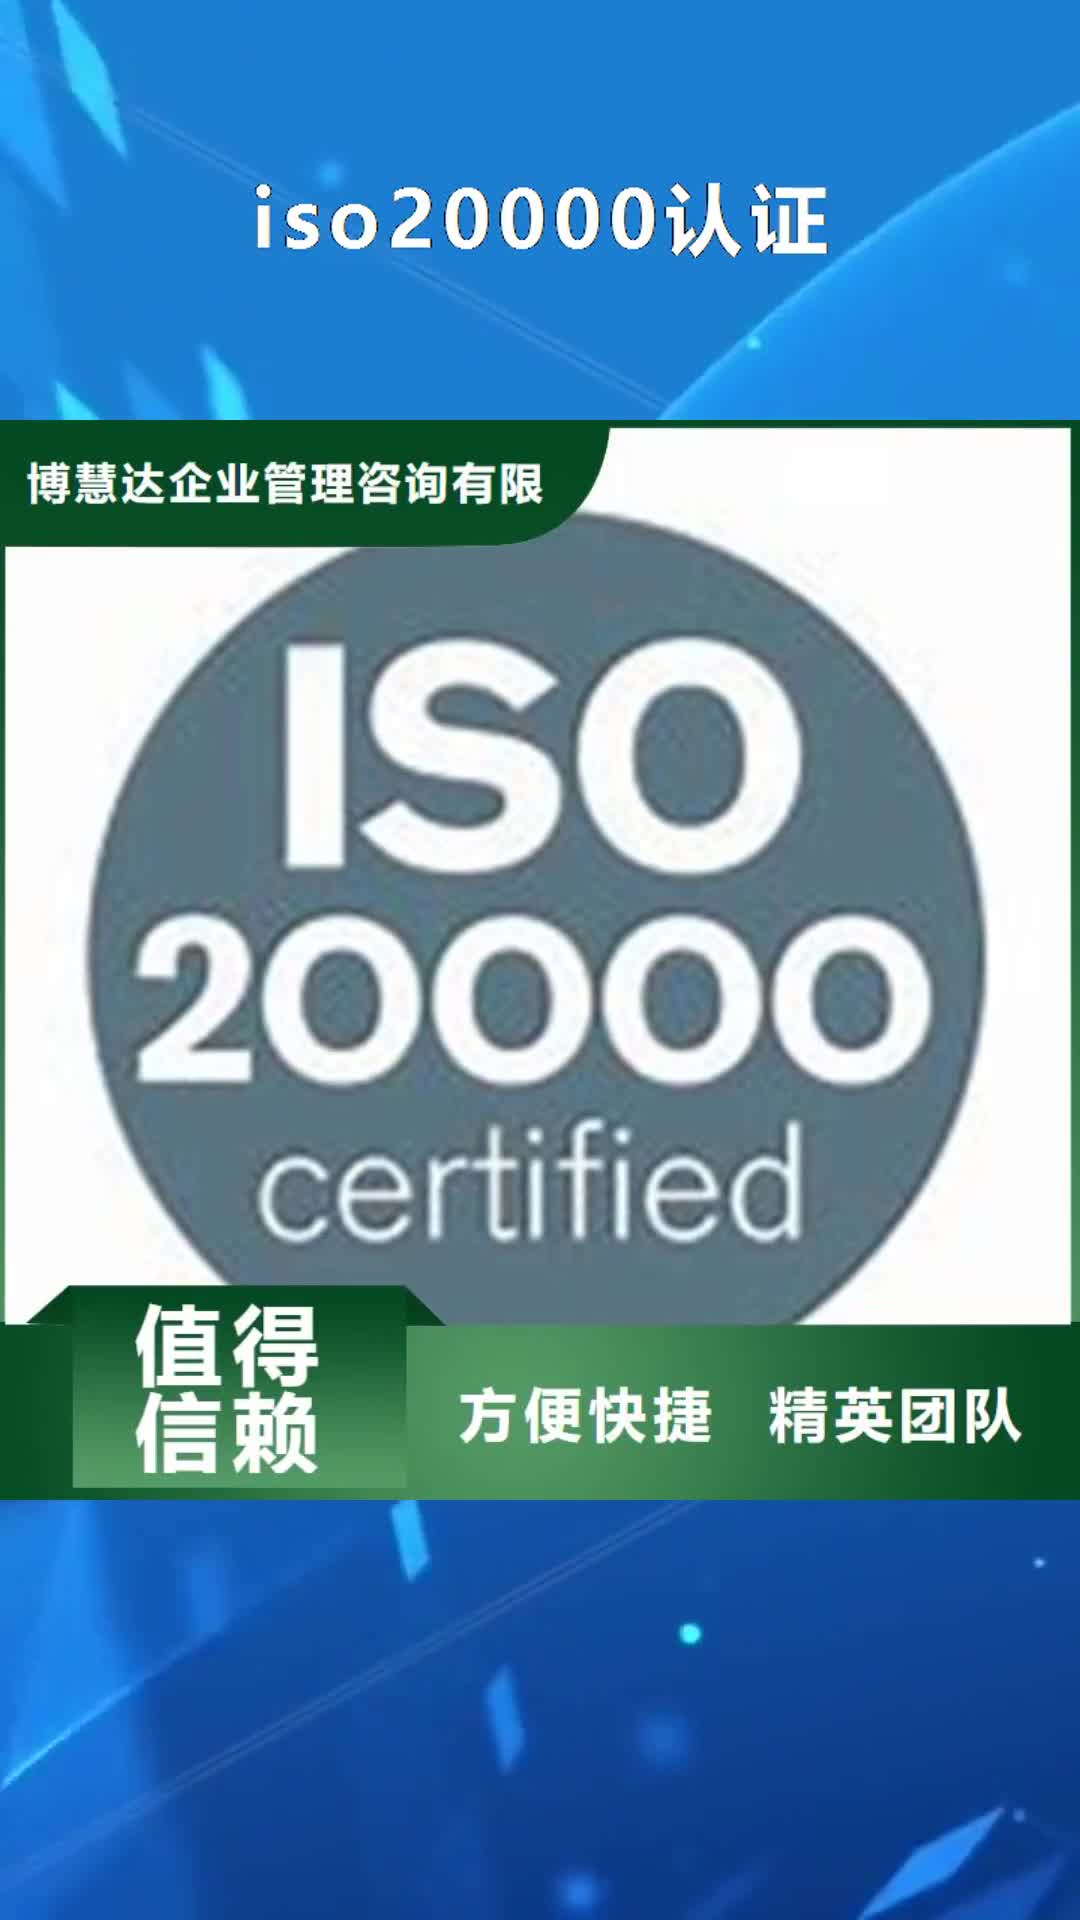 宁波【iso20000认证】-ISO14000\ESD防静电认证方便快捷